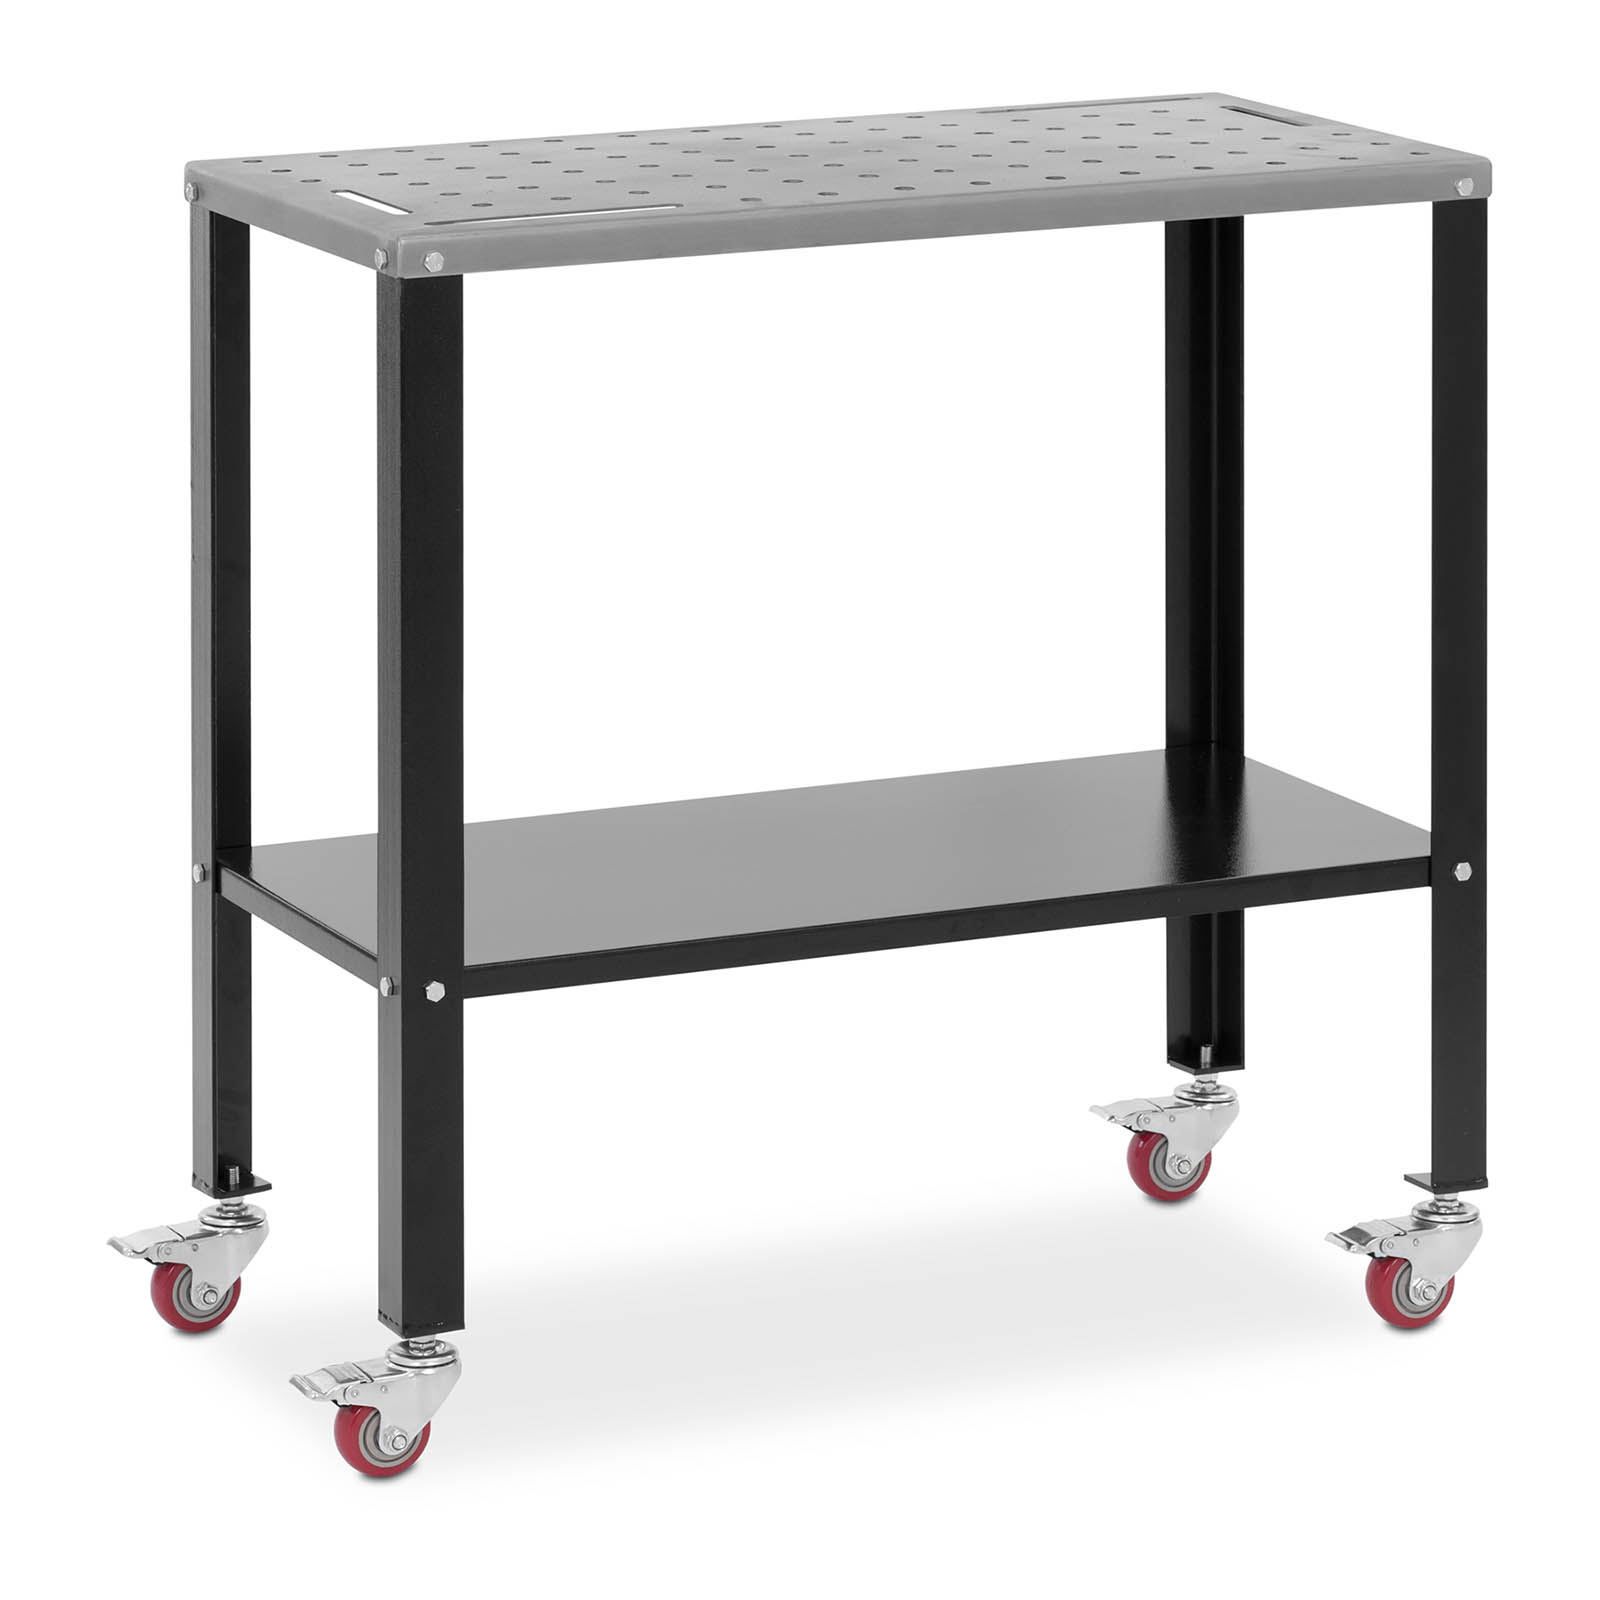 Hegesztő asztal kerekekkel - 544 kg - 91,3 x 46 cm | Stamos Welding Group